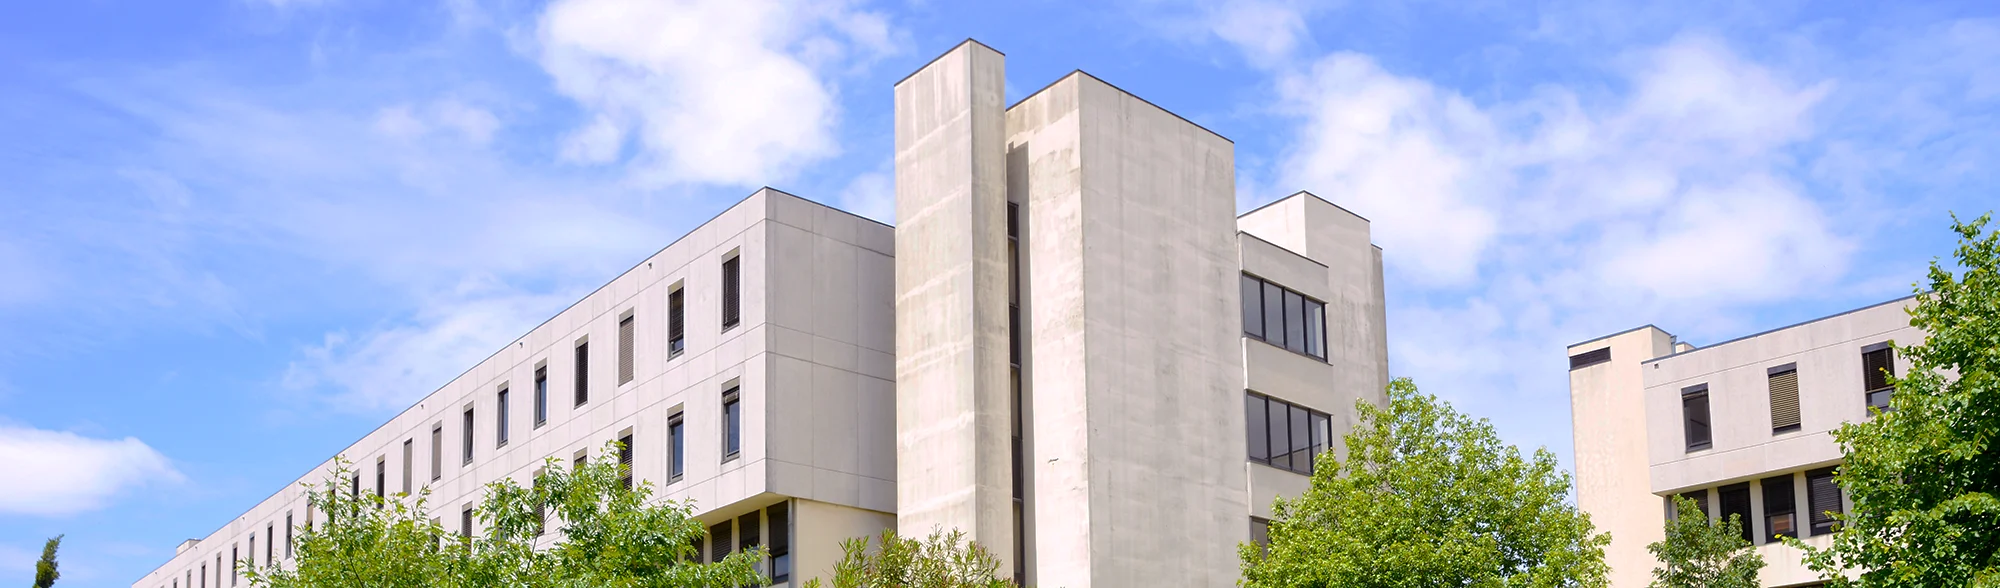 vista exterior de edifício da Faculdade de Ciências da Universidade do Porto